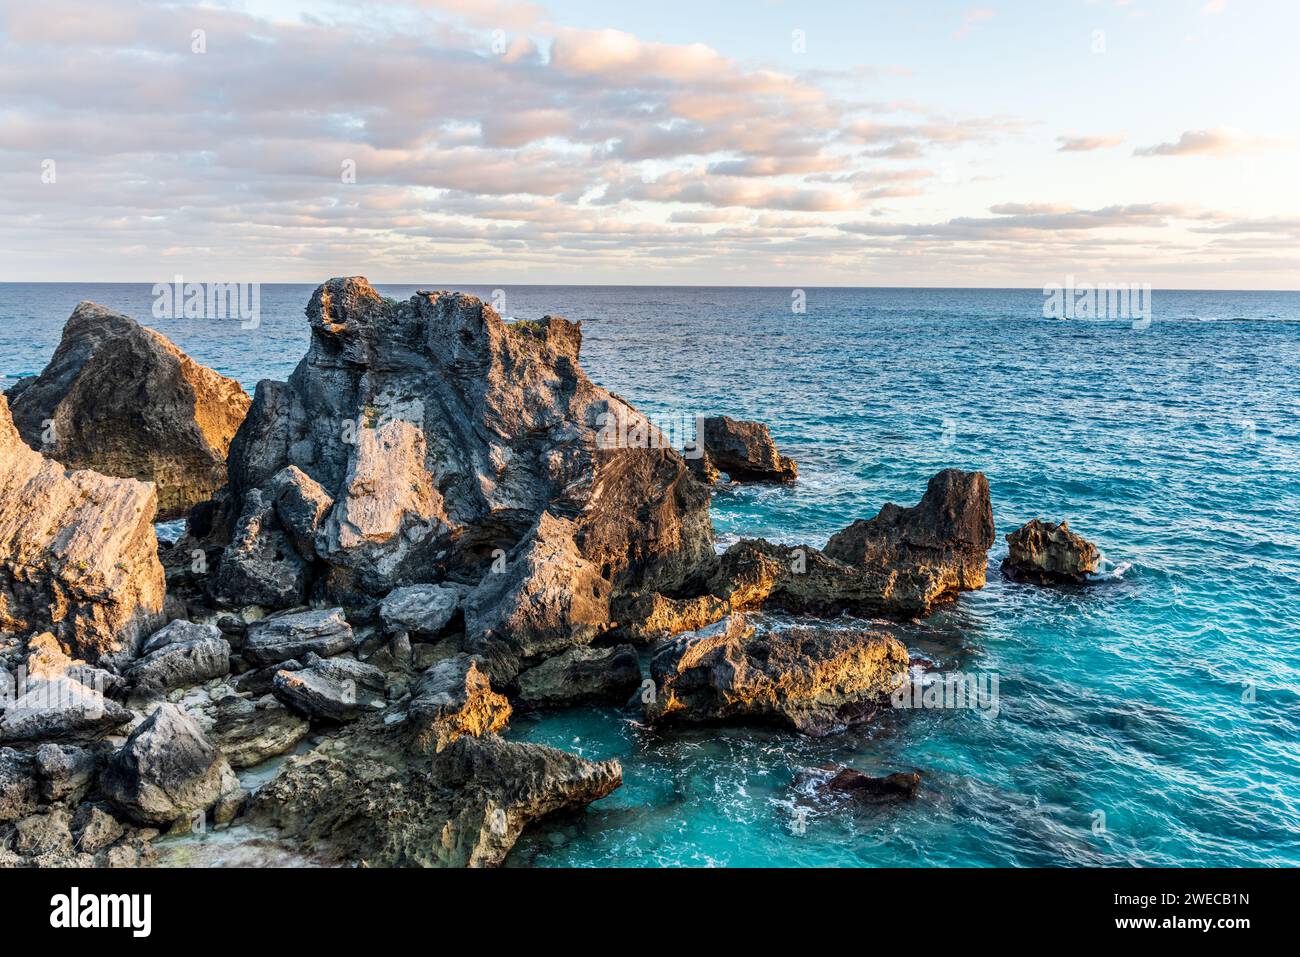 Il fascino costiero di Tobacco Bay: St. George's, Bermuda; dove rocce robuste incorniciano acque azzurre, una pittoresca miscela della bellezza della natura. Foto Stock